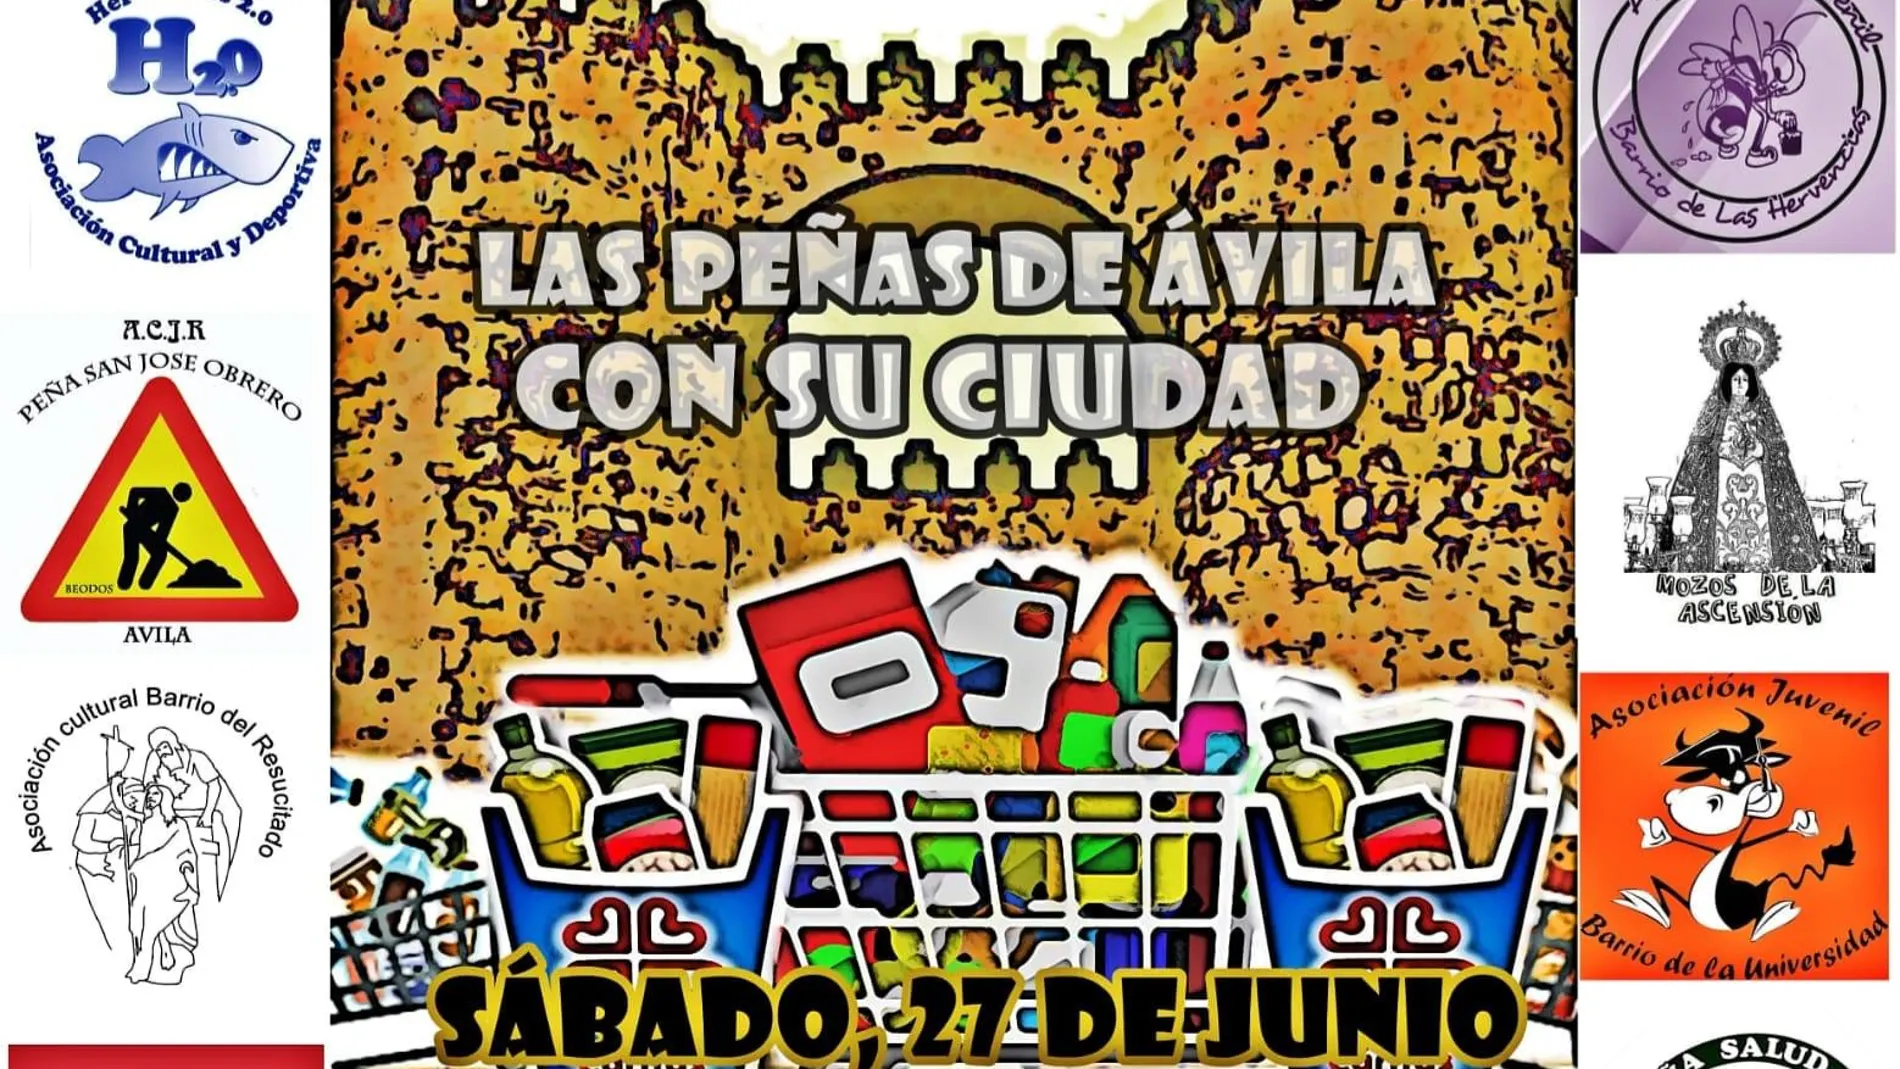 Cartel anunciado de la gran recogida de alimentos en Ávila prevista para este sábado